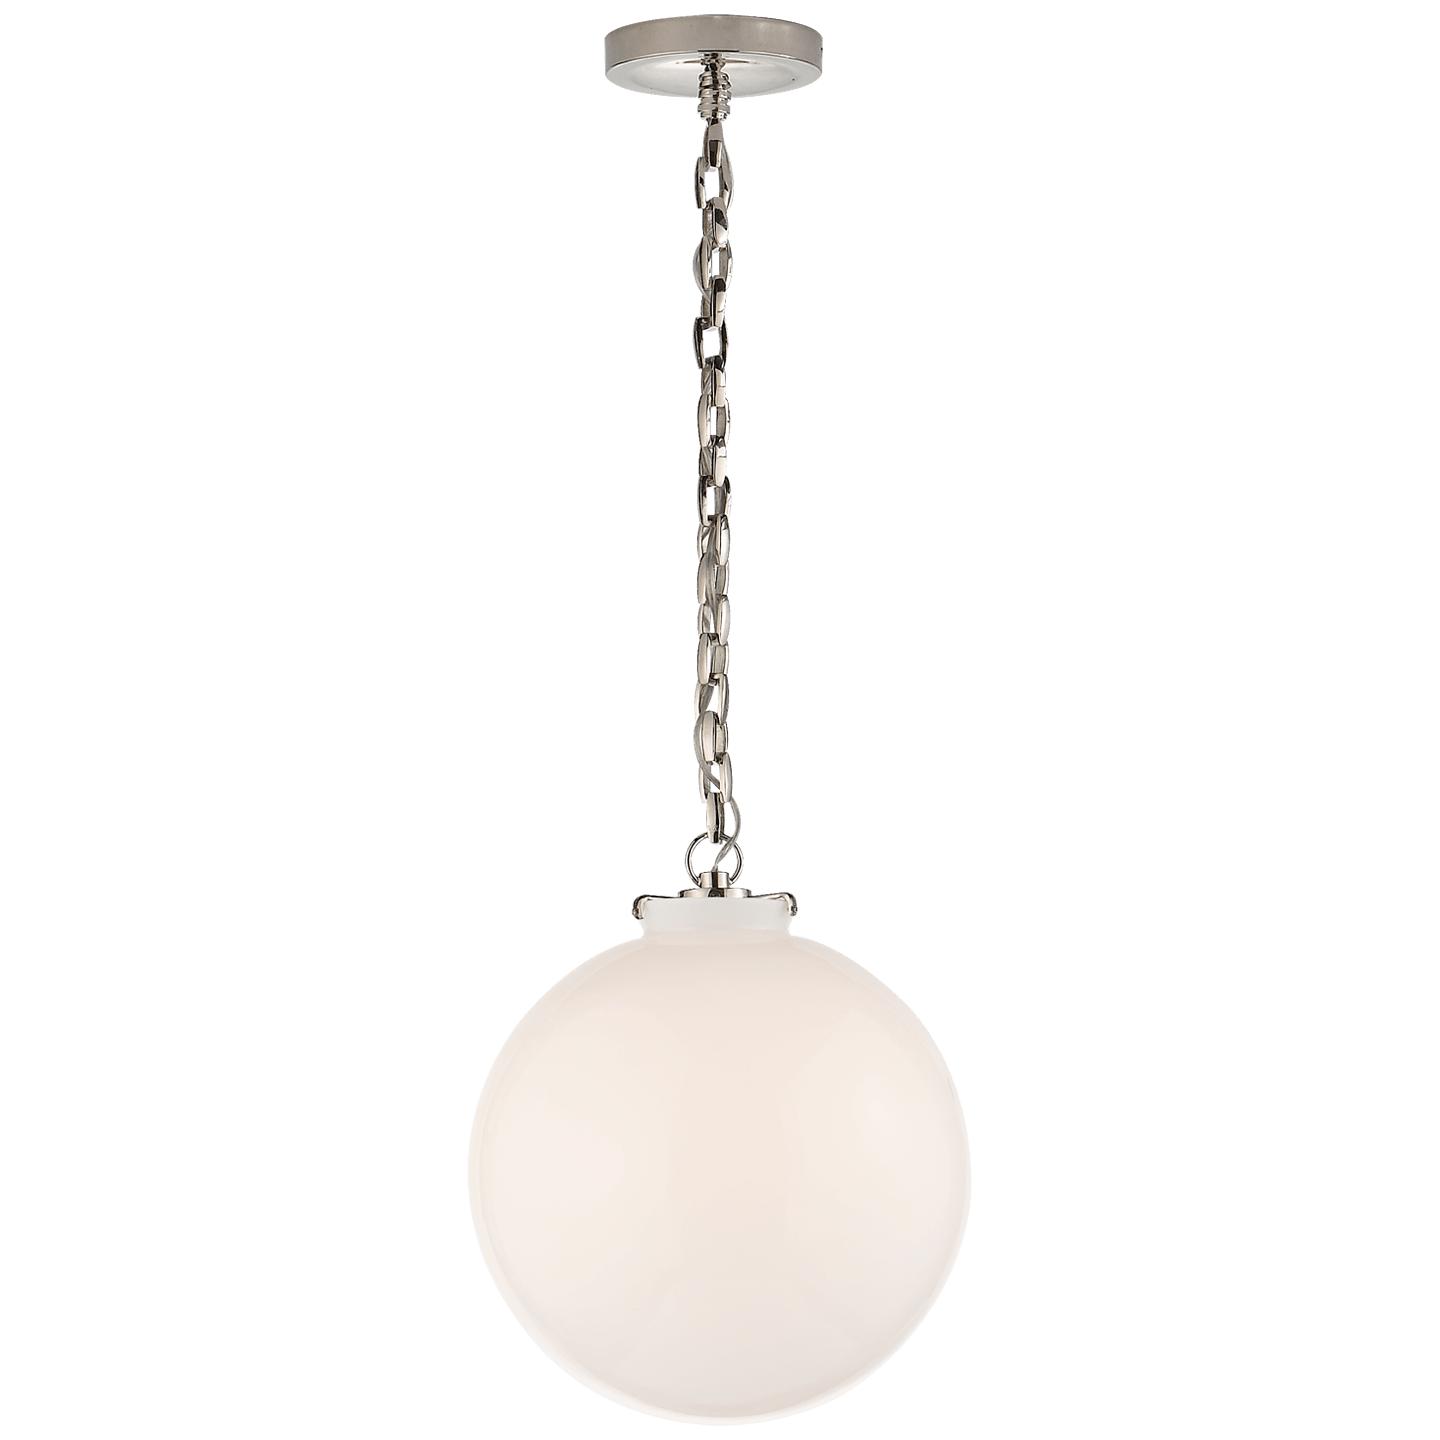 Купить Подвесной светильник Katie Globe Pendant в интернет-магазине roooms.ru